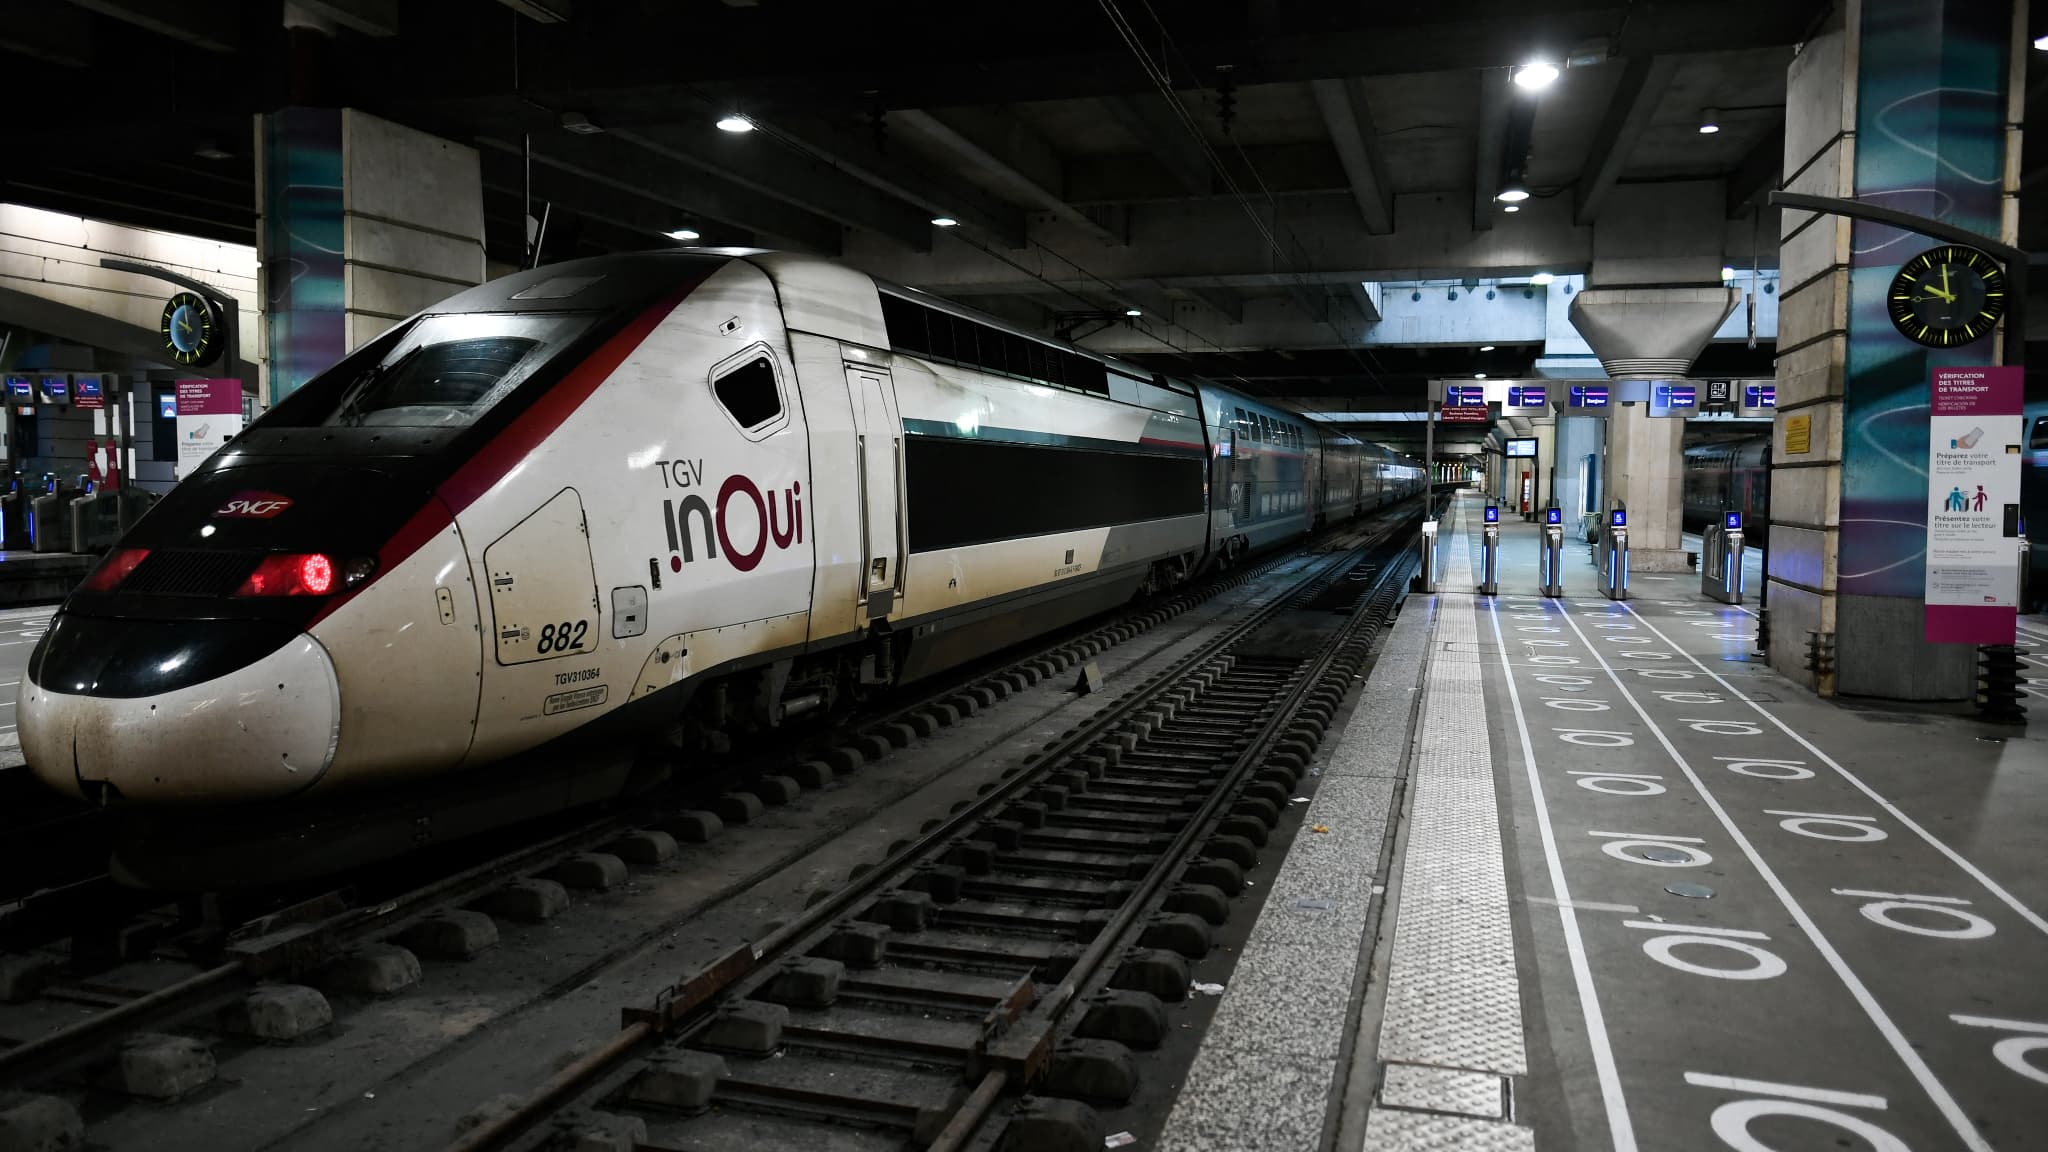 Questo lunedì saranno in vendita i biglietti ferroviari per la Spagna e l'Italia per le vacanze estive